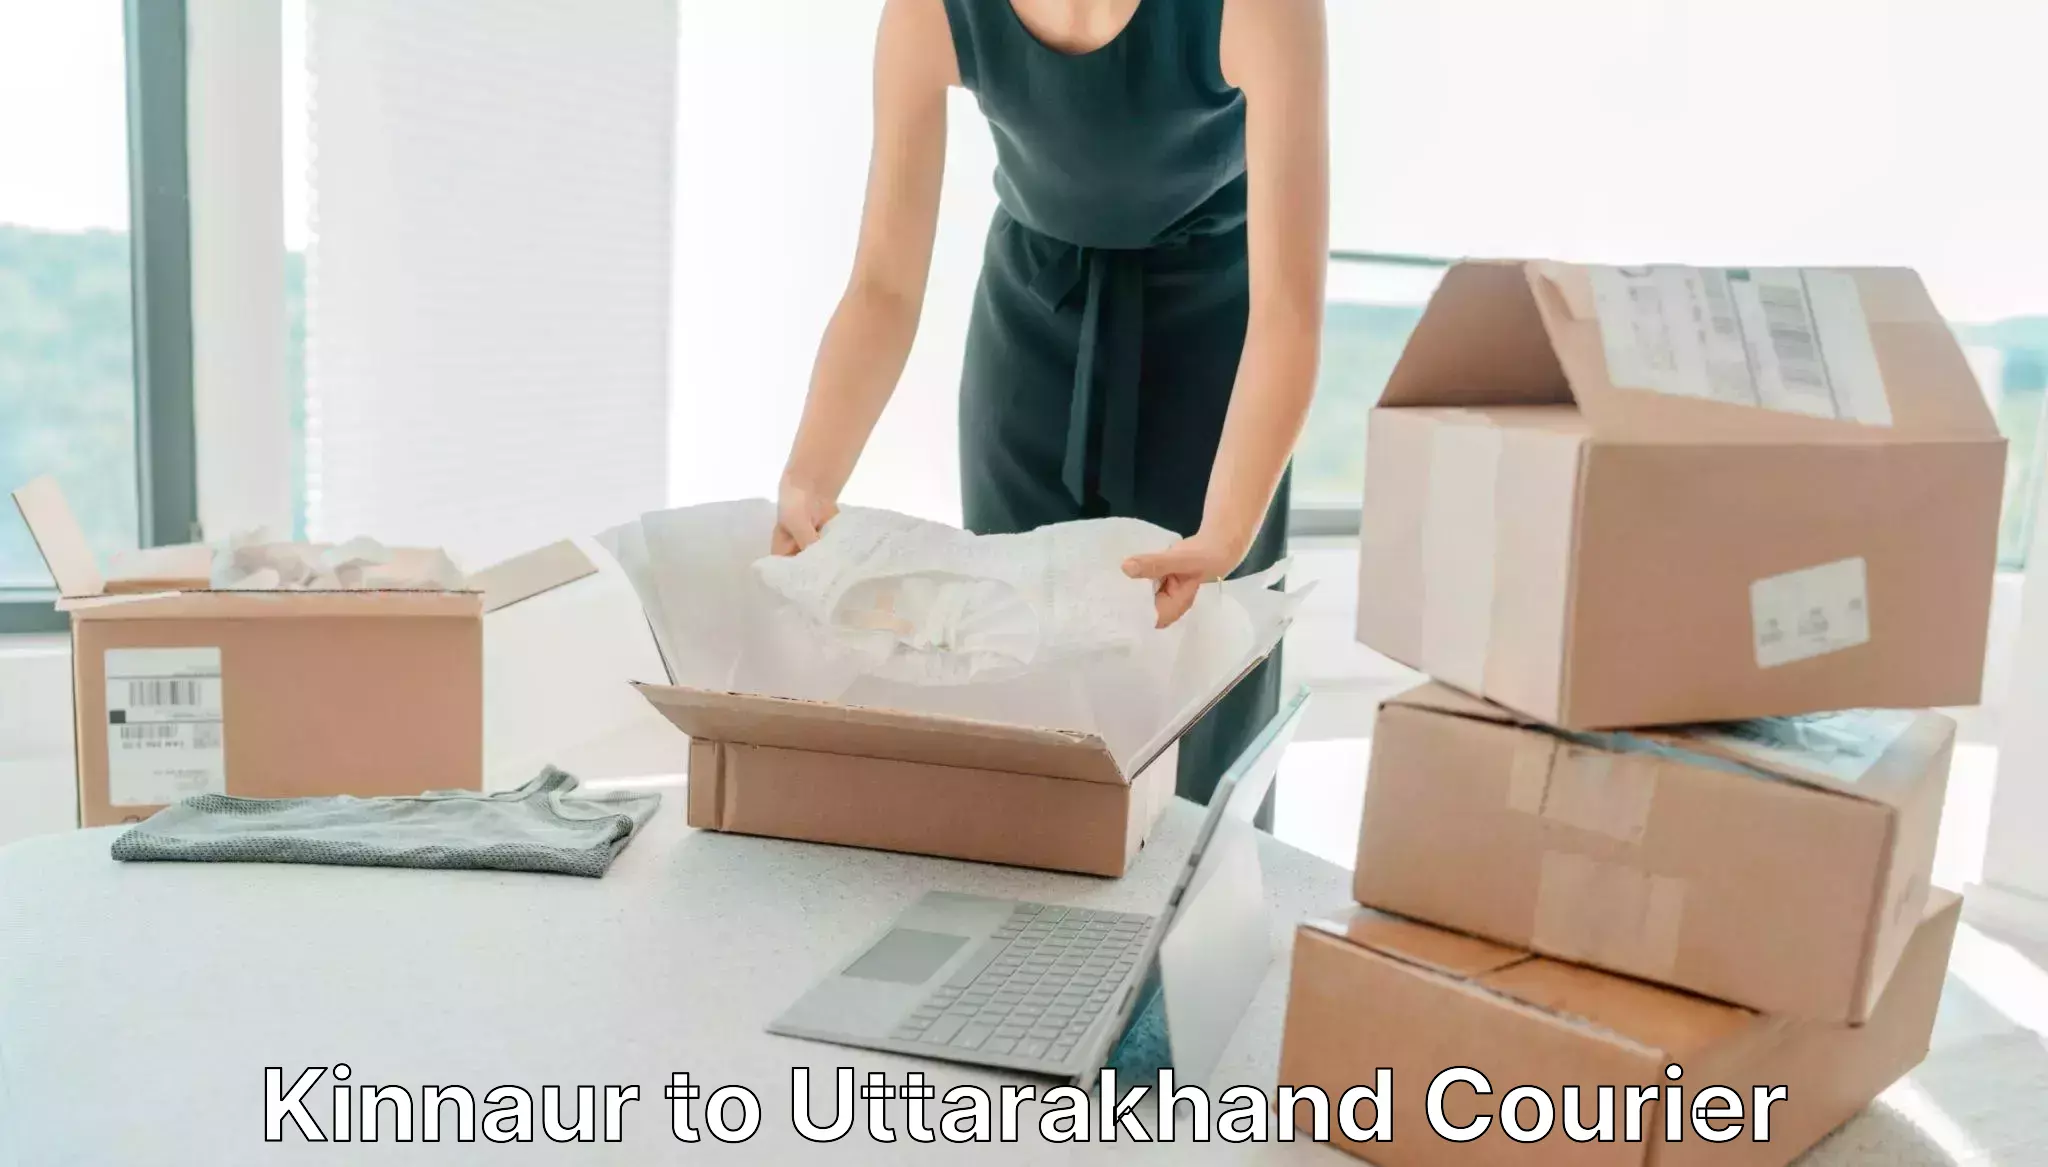 Bulk shipment Kinnaur to Uttarkashi